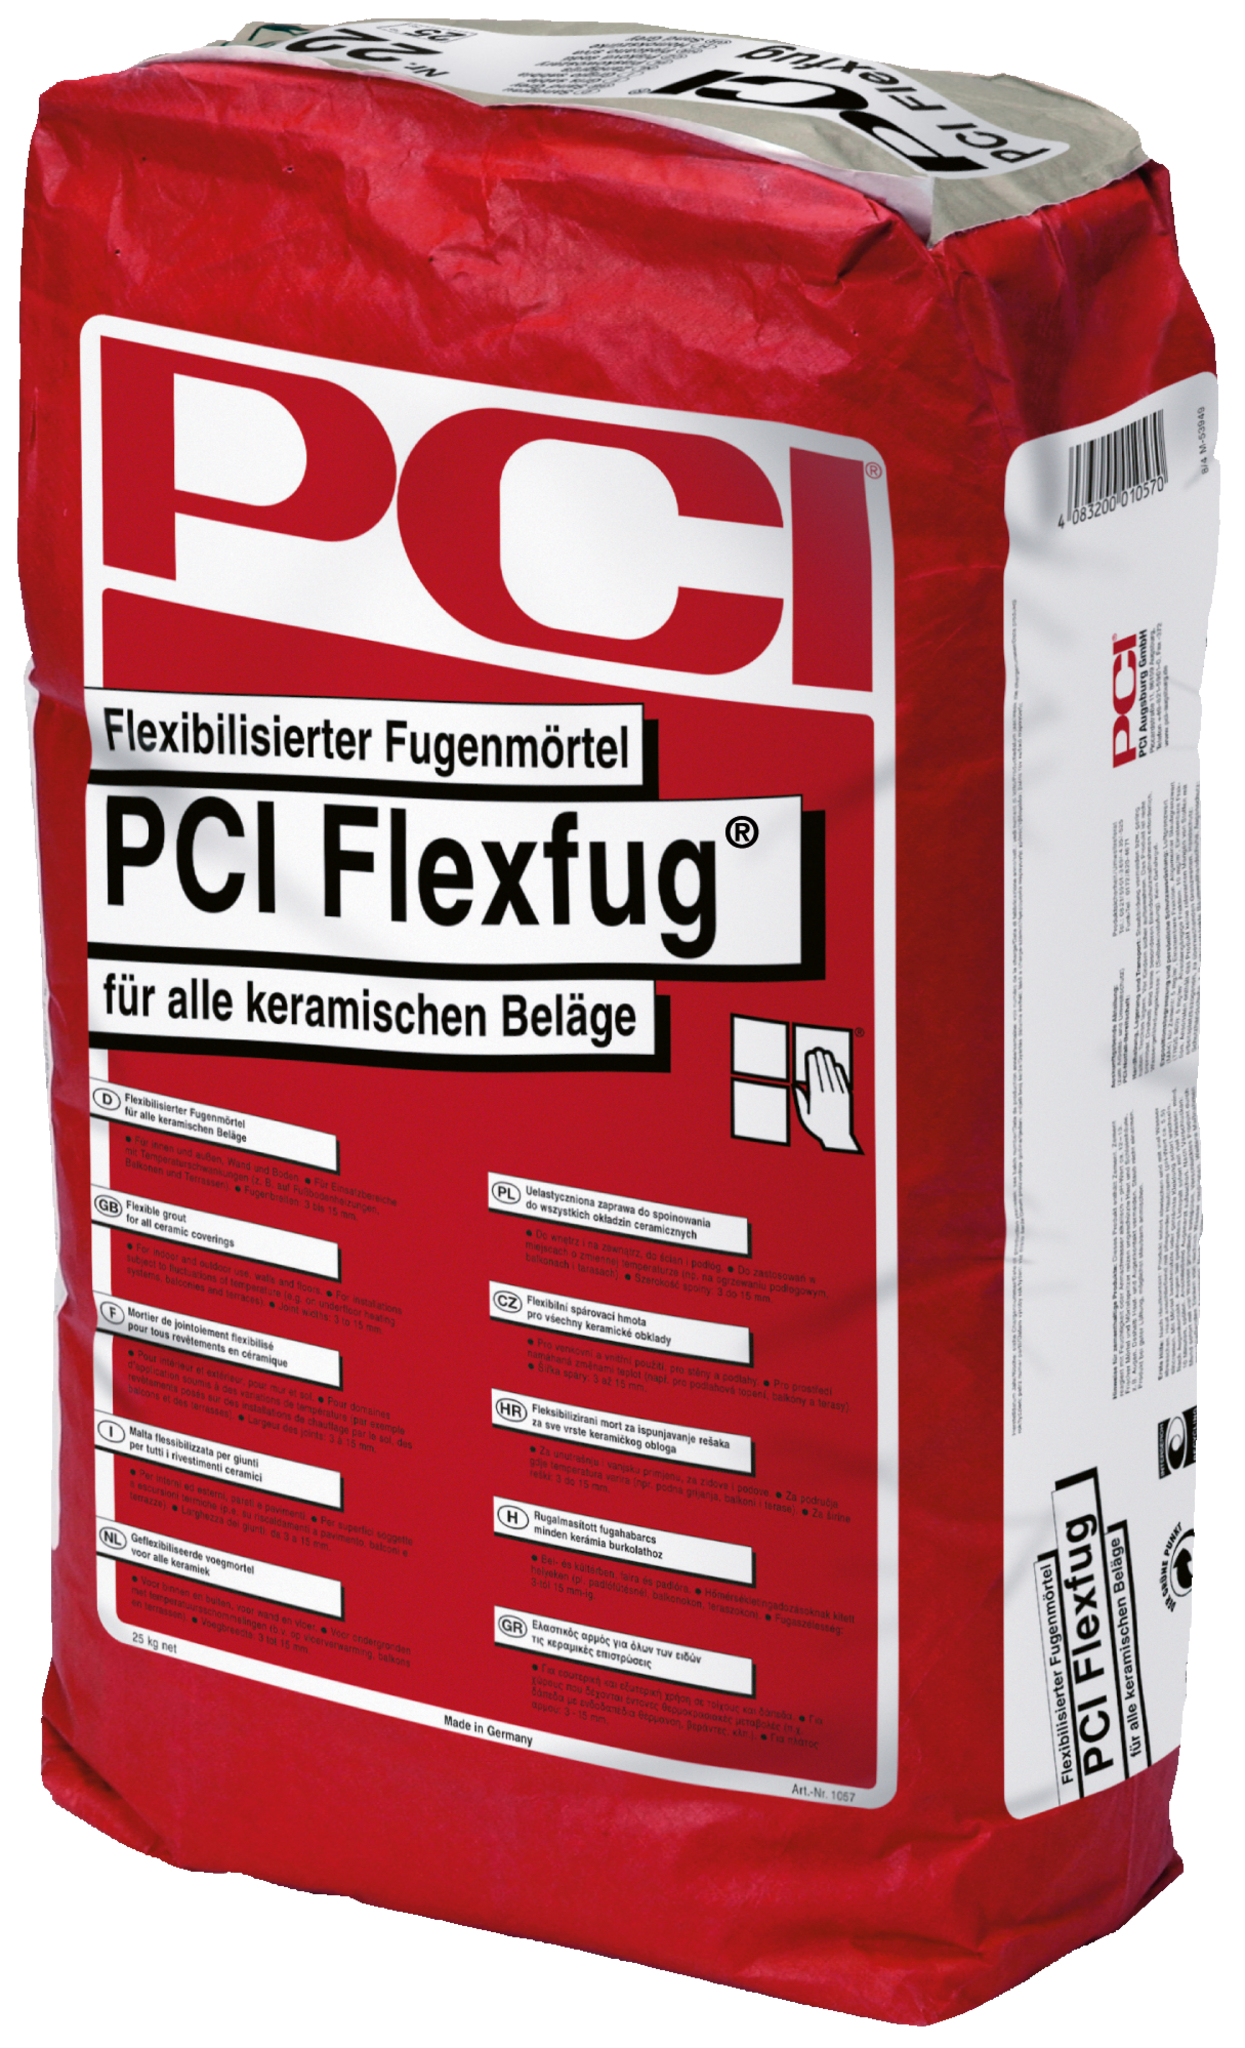 ZL OST PCI Flexfug basalt Nr.19 25kg Flexibilisierter Fugenmörtel